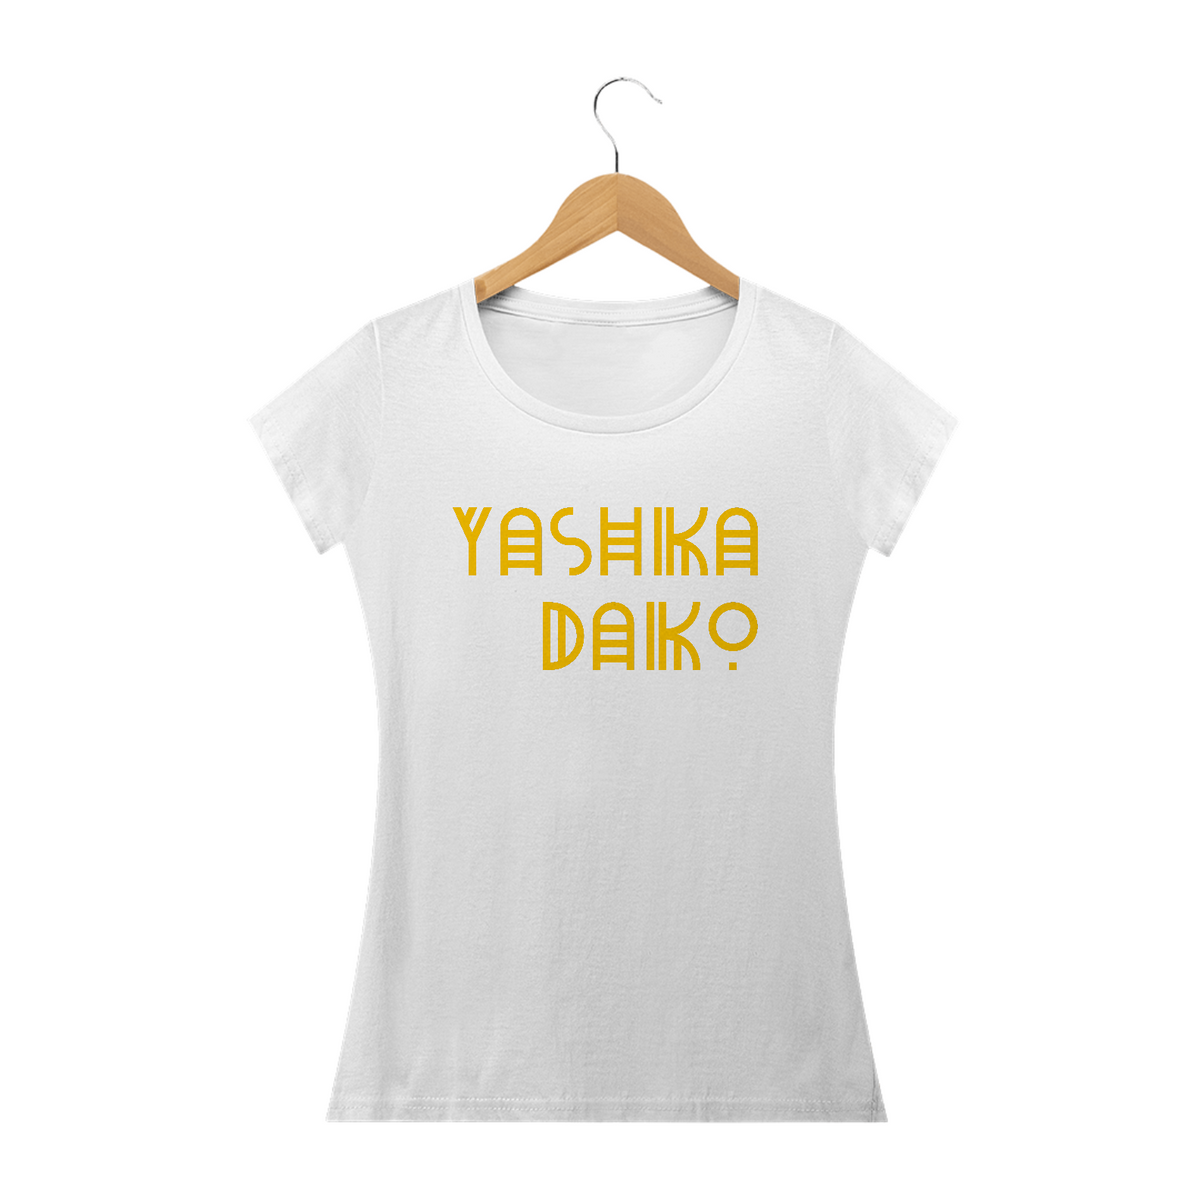 Nome do produto: Yashika Daiko